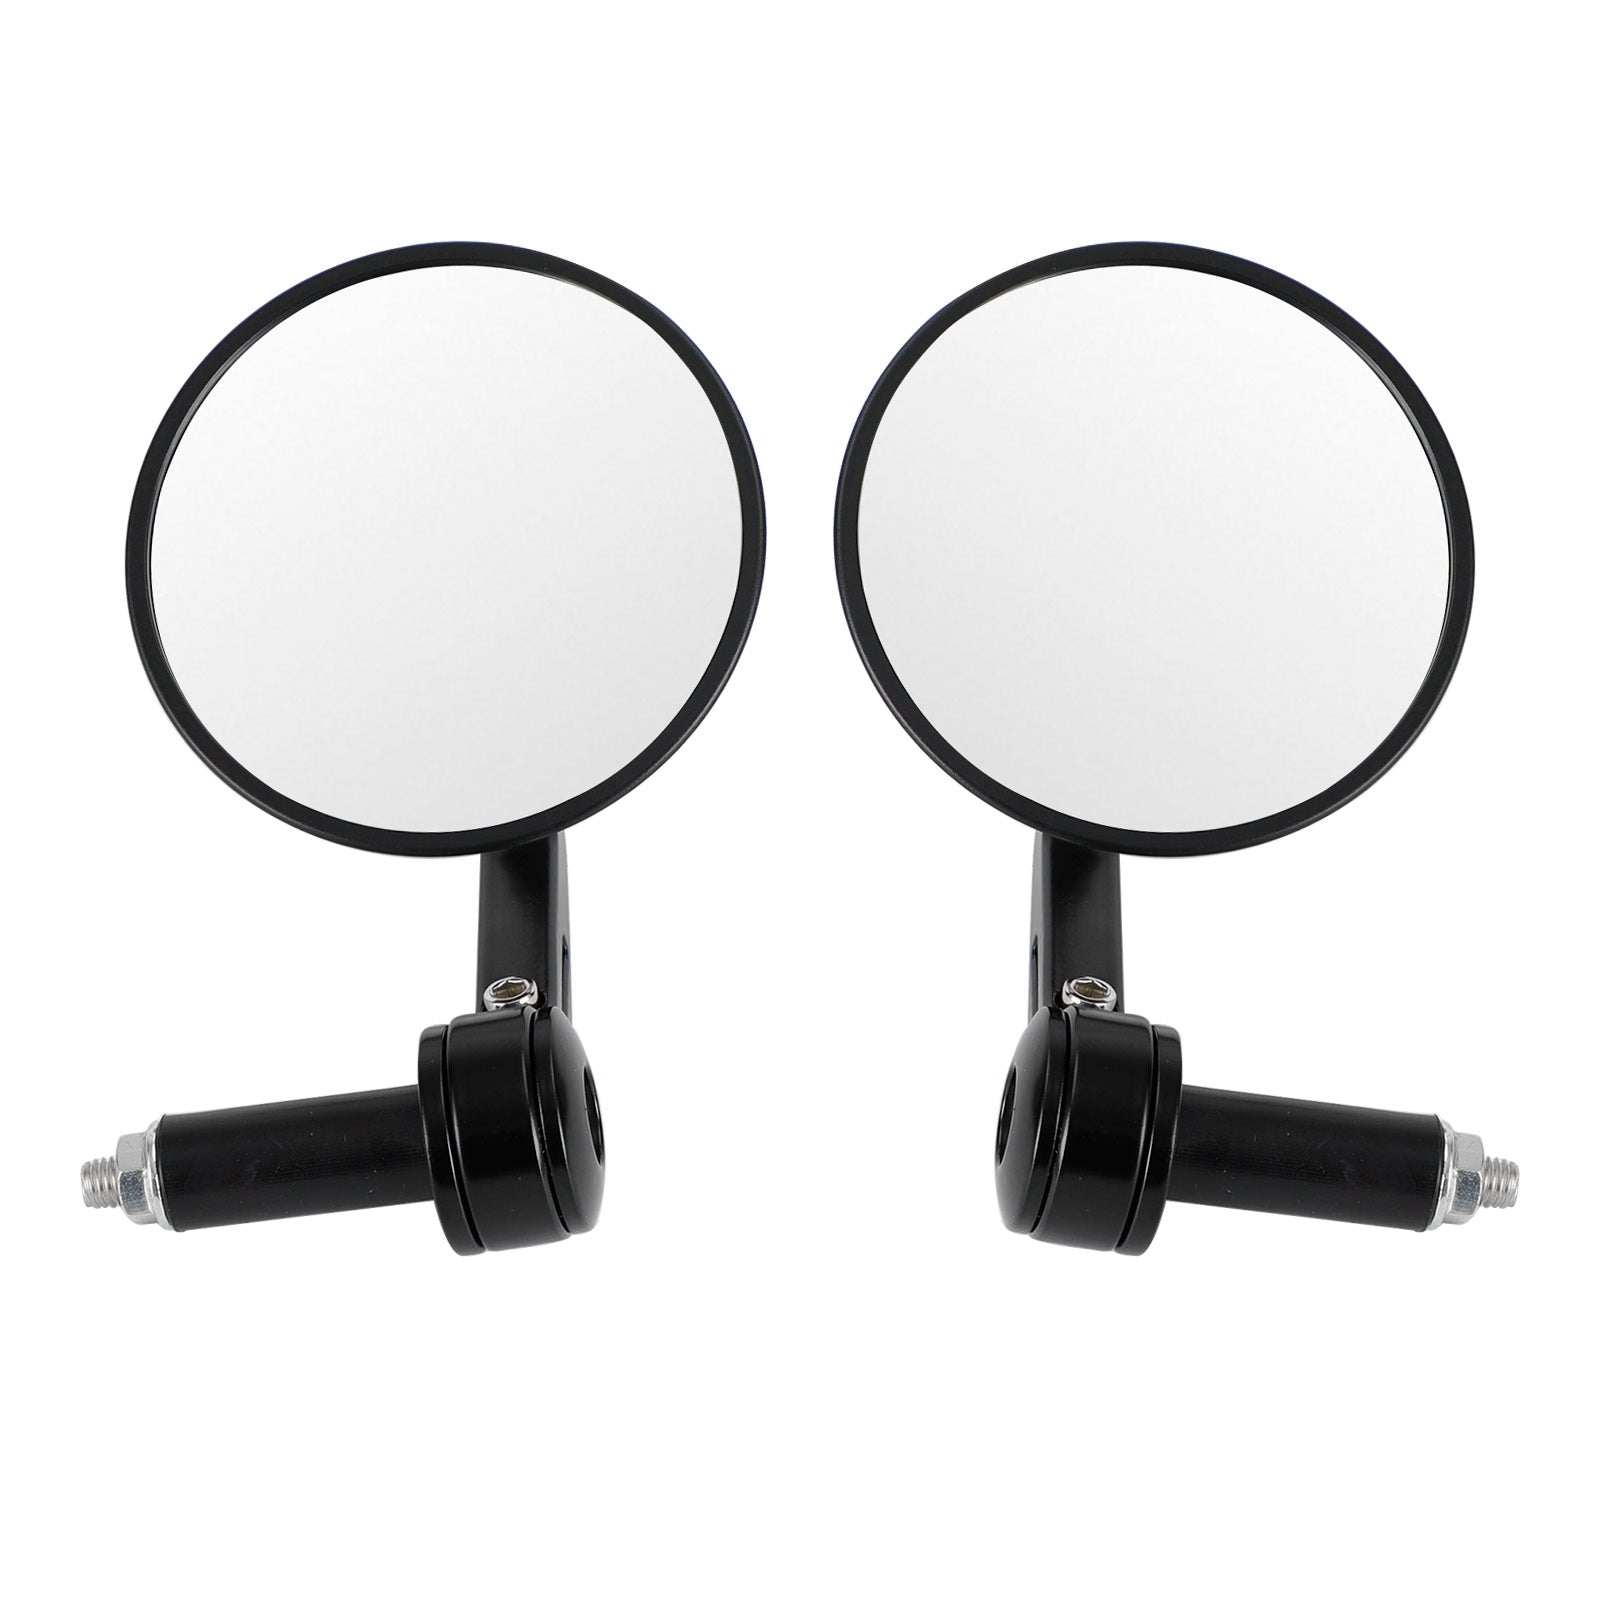 Specchietti retrovisori personalizzati per manubrio, antiriflesso, rotondi, neri, qualità billet, 22 mm 7/8" X2